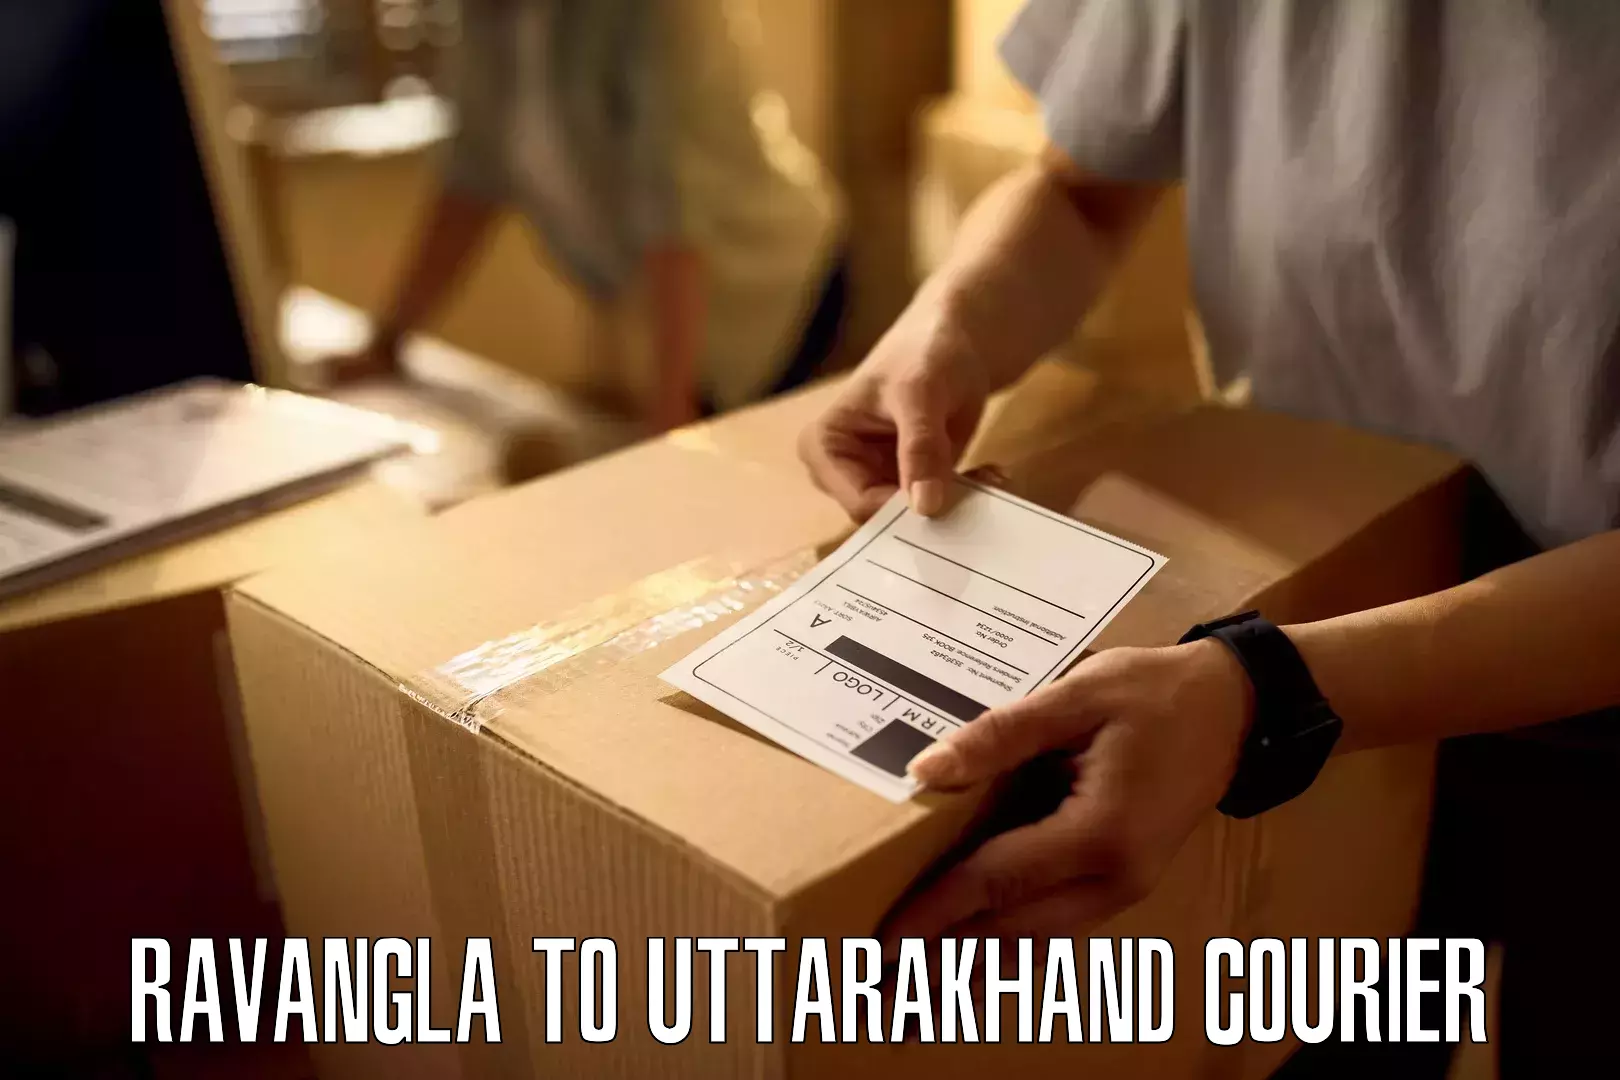 Door-to-door freight service Ravangla to Uttarakhand